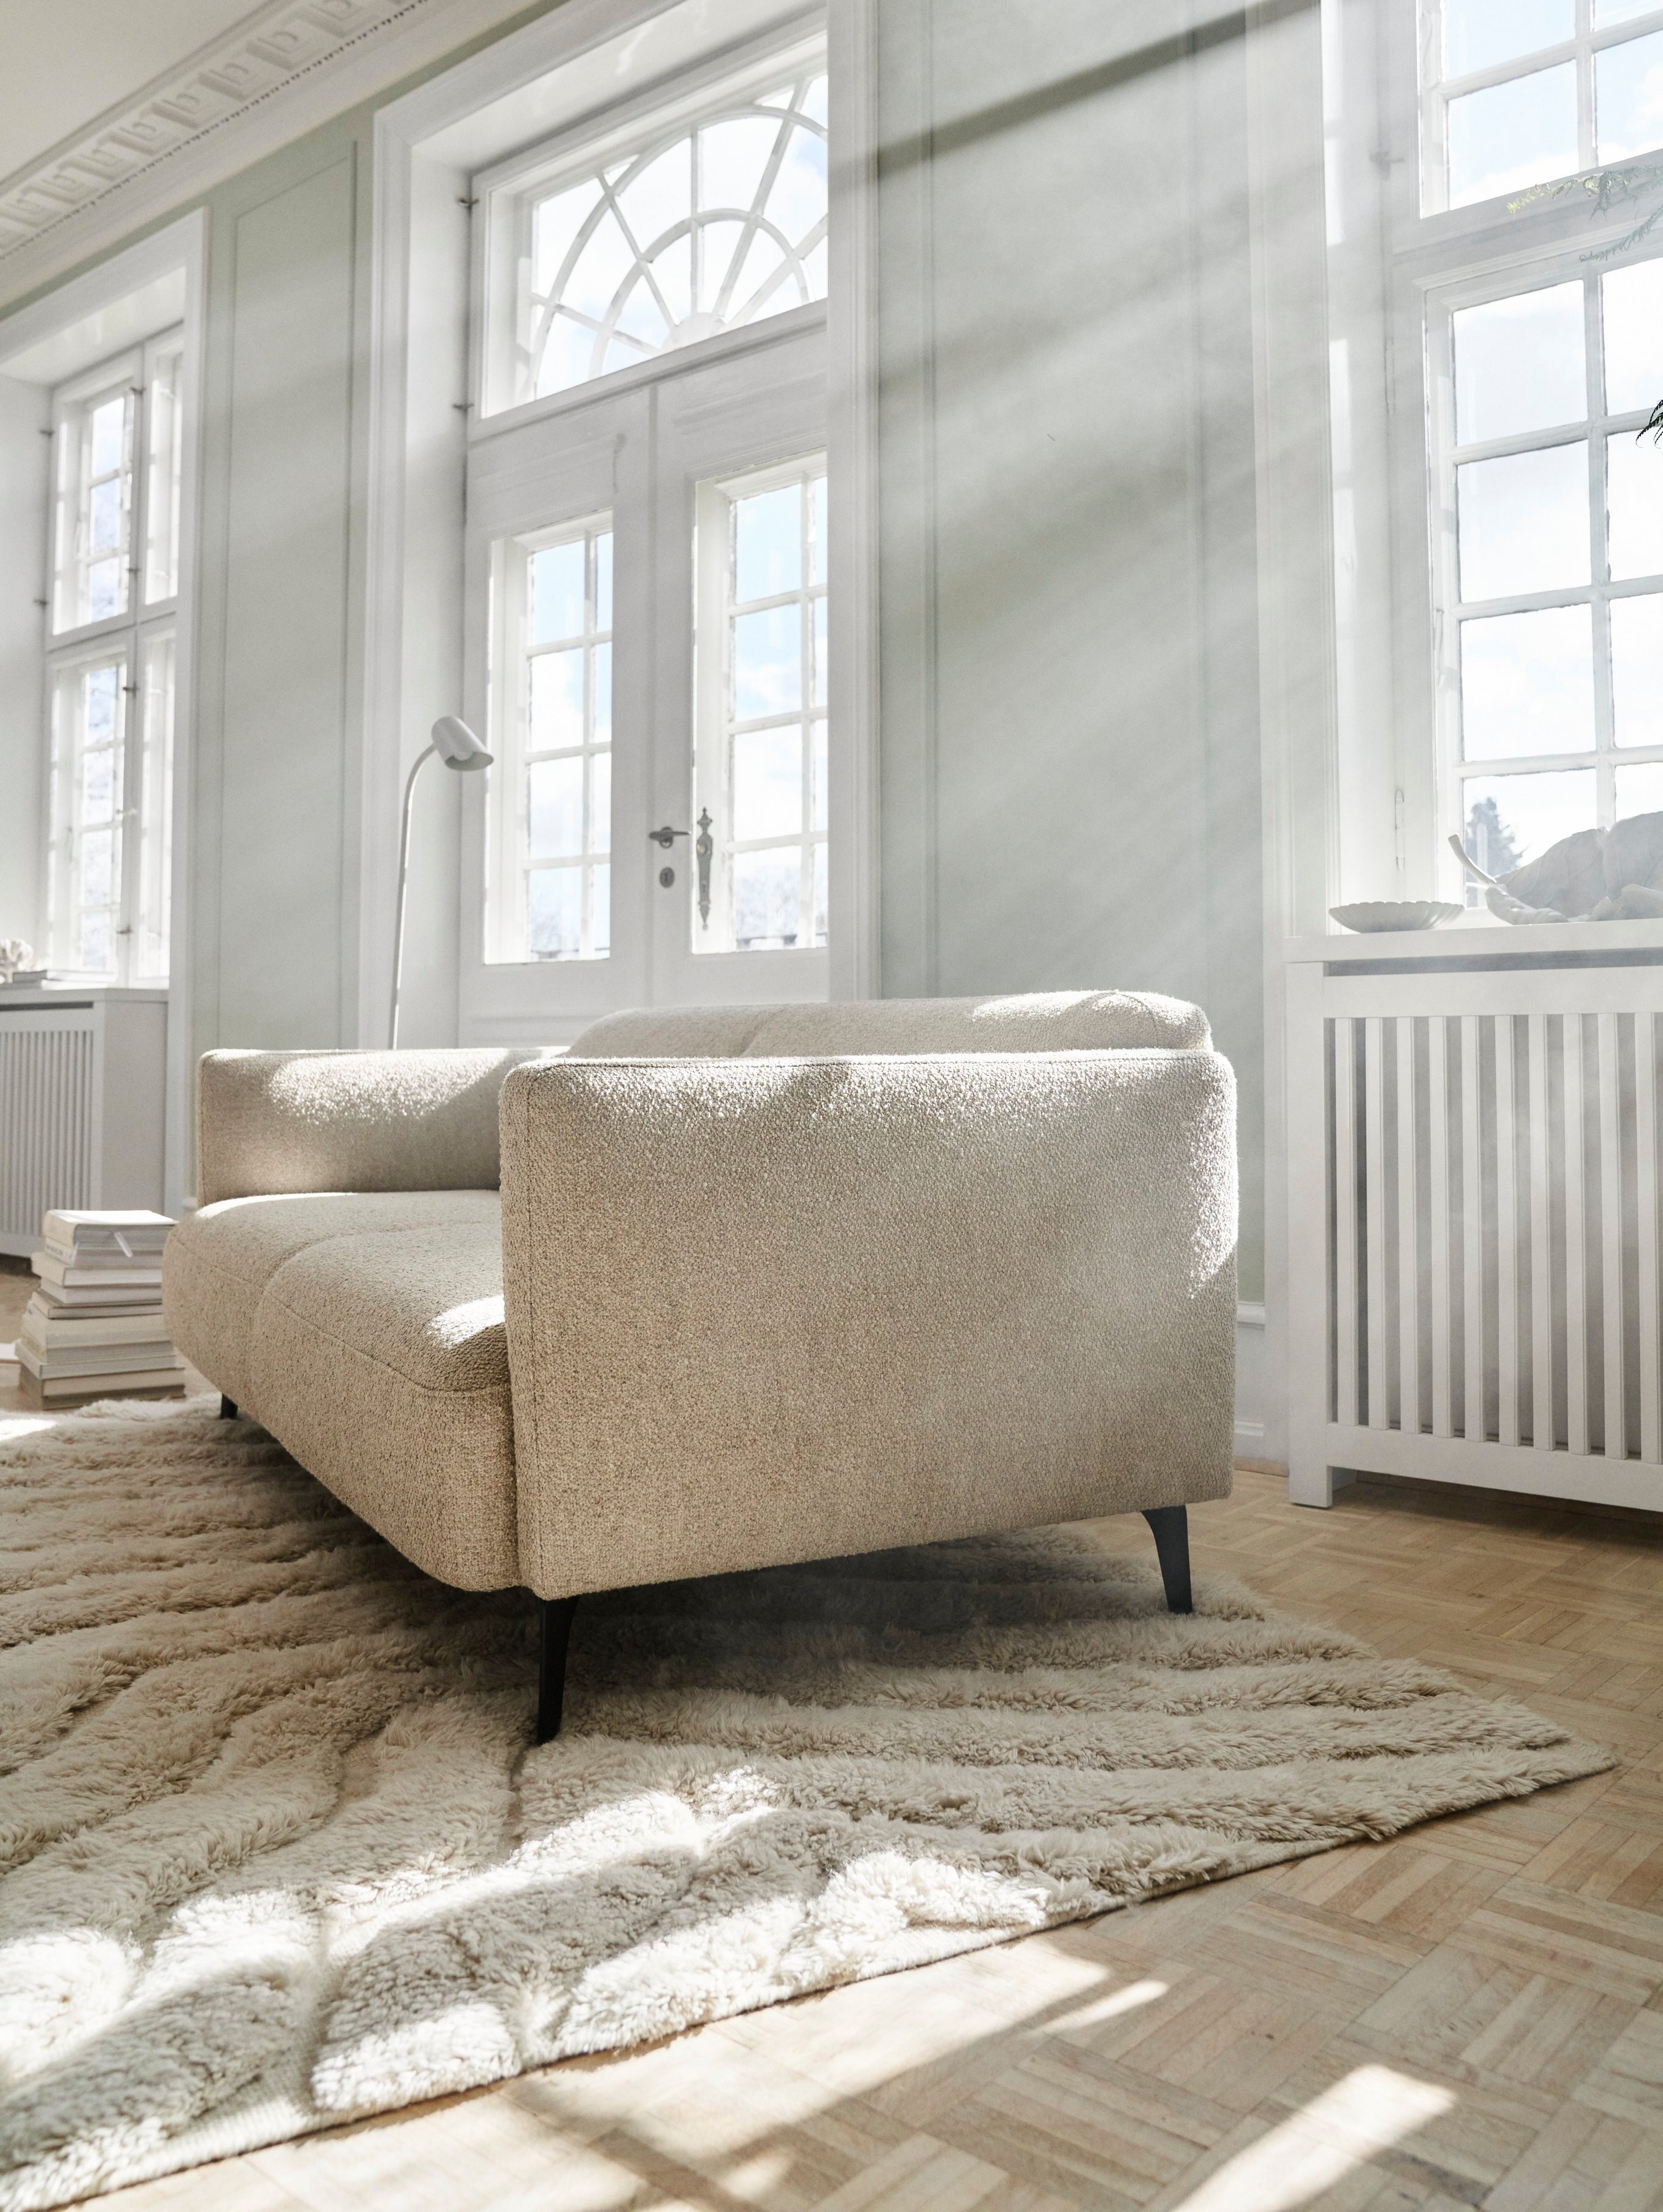 Modena soffa i ett vackert solbelyst skandinaviskt inspirerat rum.